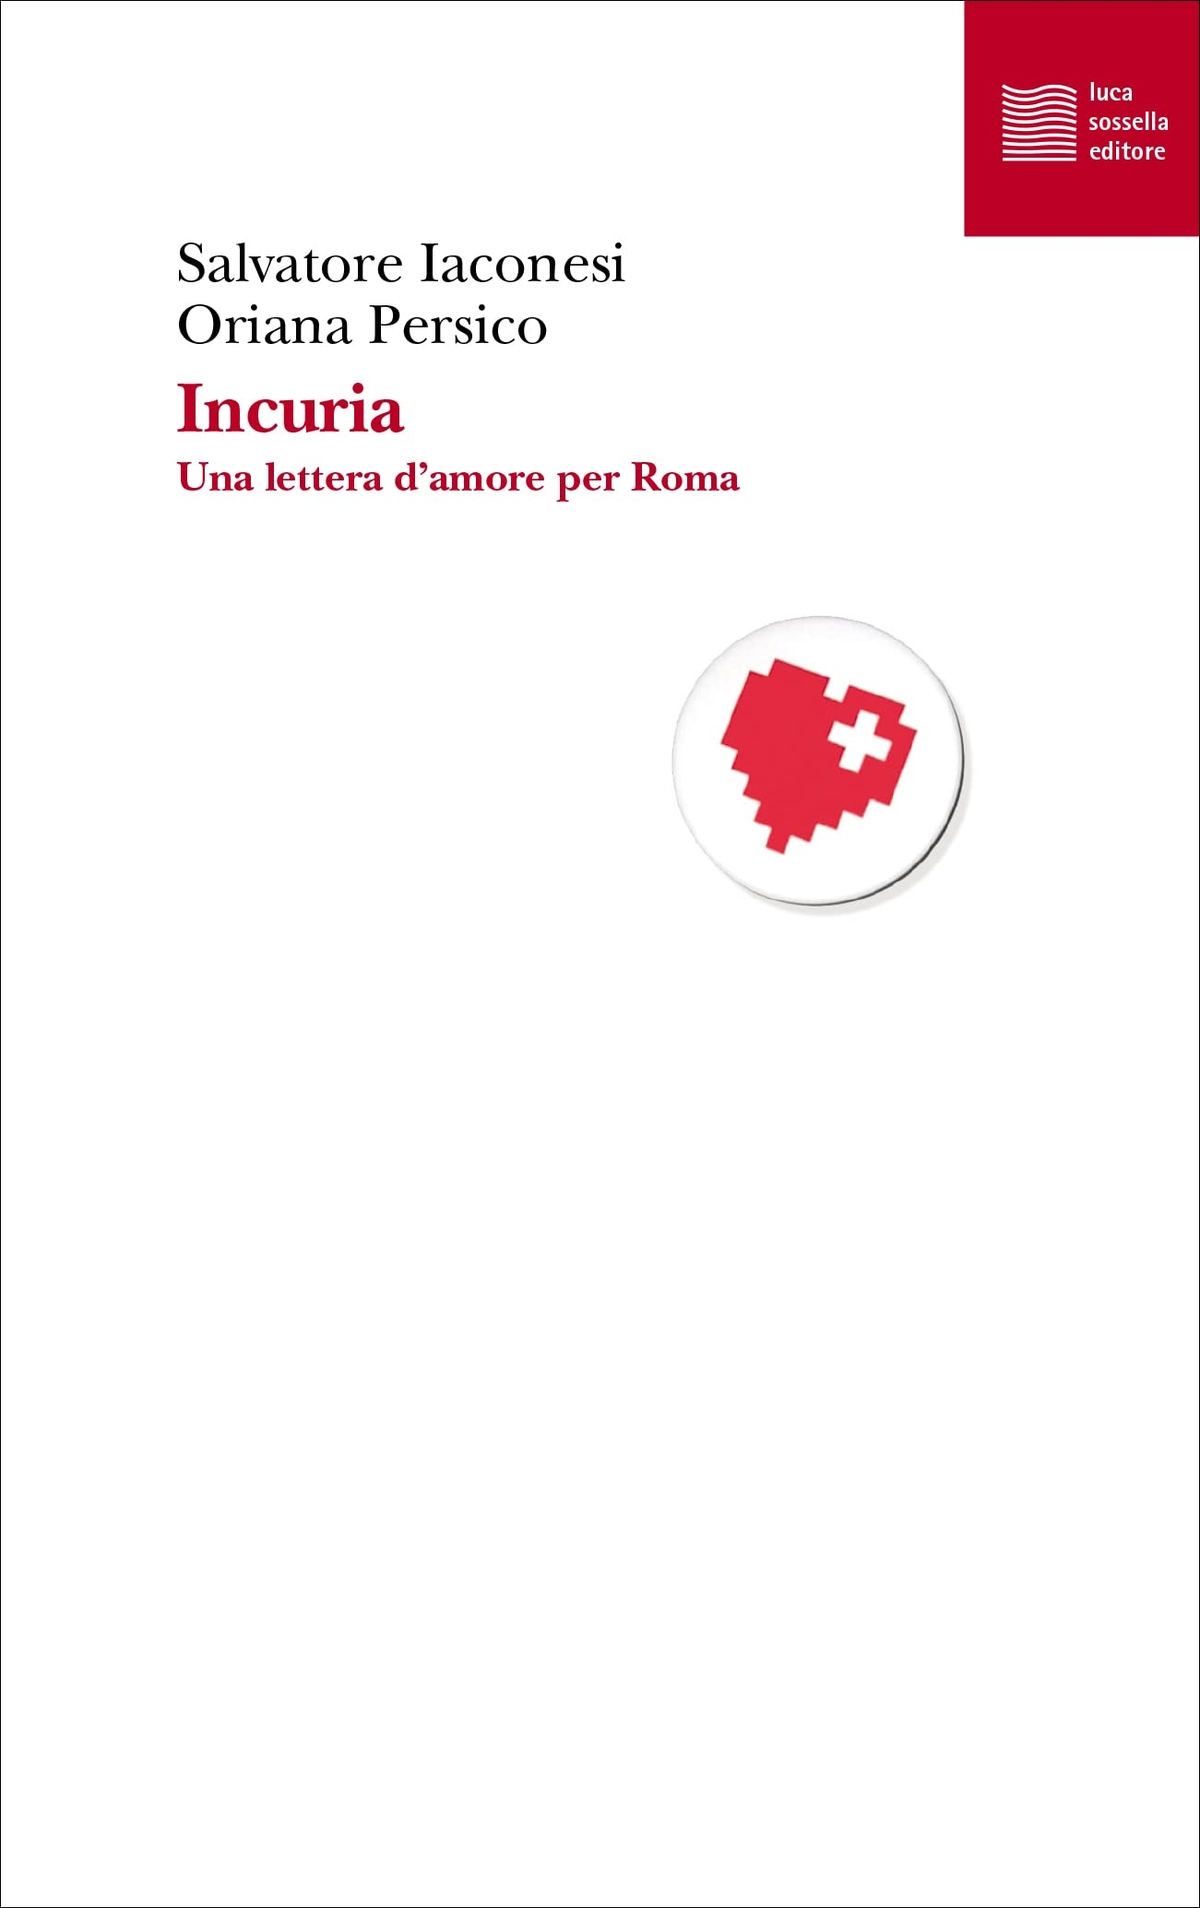 Salvatore Iaconesi & Oriana Persico – Incuria. Una lettera d'amore per Roma (Luca Sossella, Roma 2021)